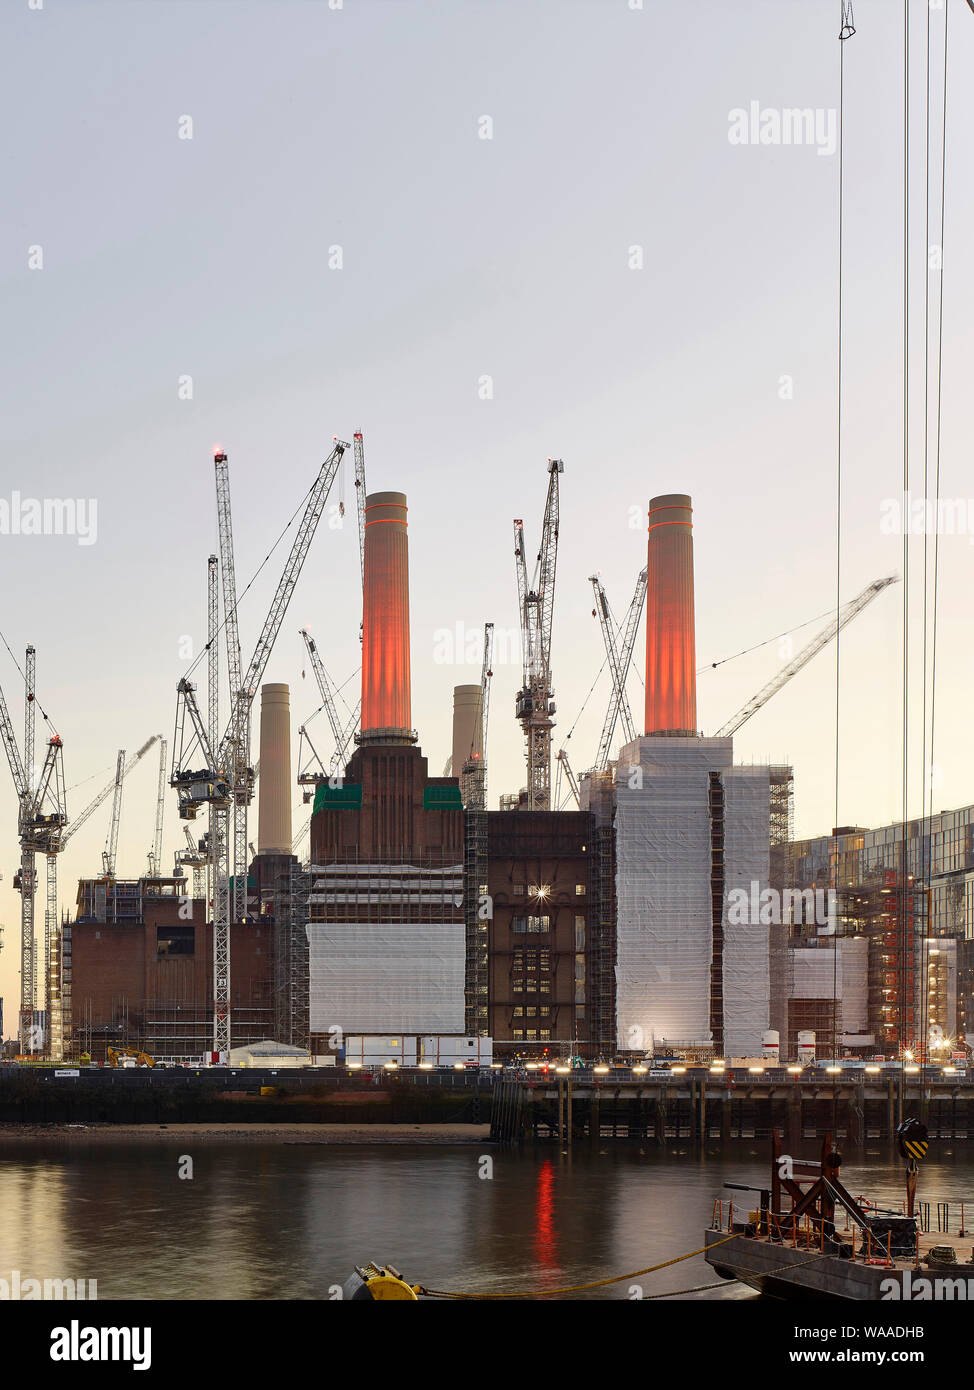 Enge Blick über die Themse mit beleuchteten Baustelle. Battersea Power Station 2019, London, Vereinigtes Königreich. Architekt: Verschiedene, 2019. Stockfoto